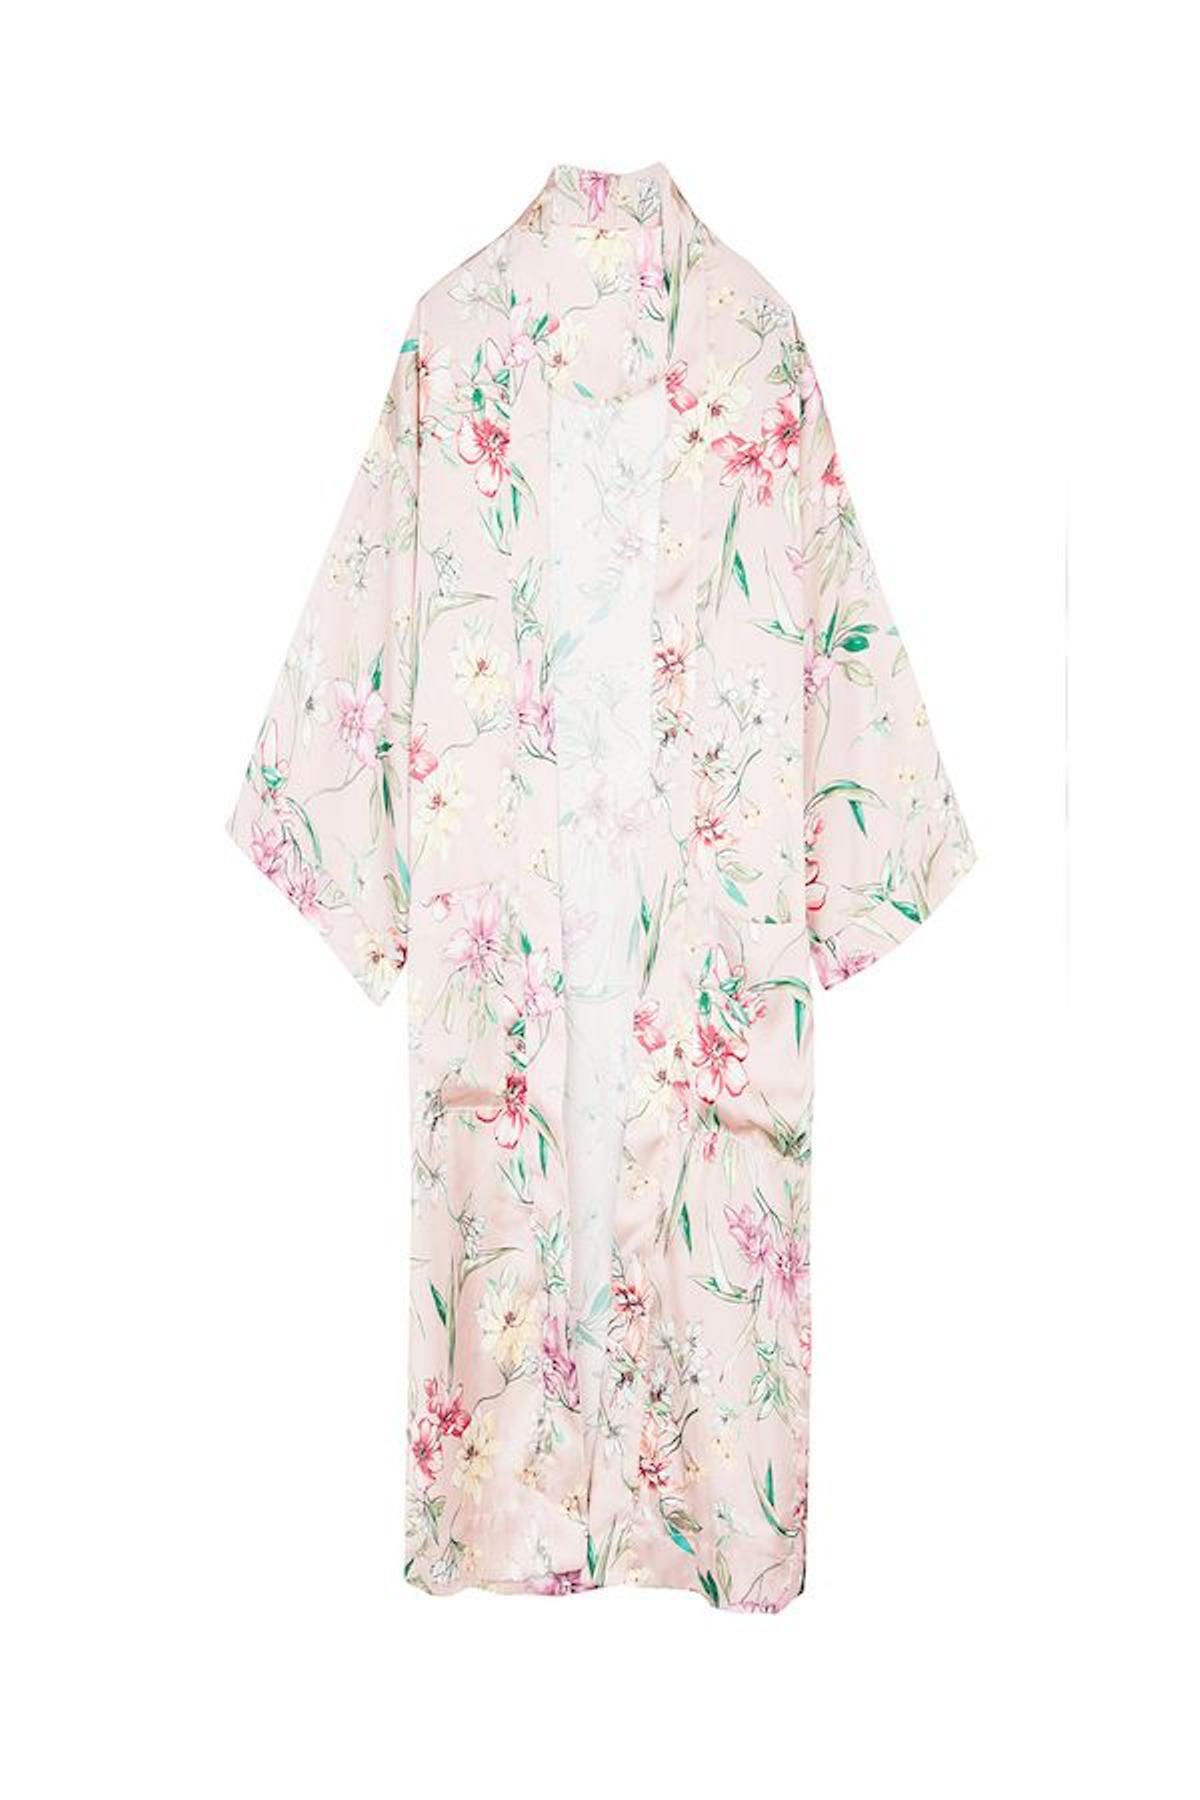 Kimono batín, de Bershka, 19,99 euros